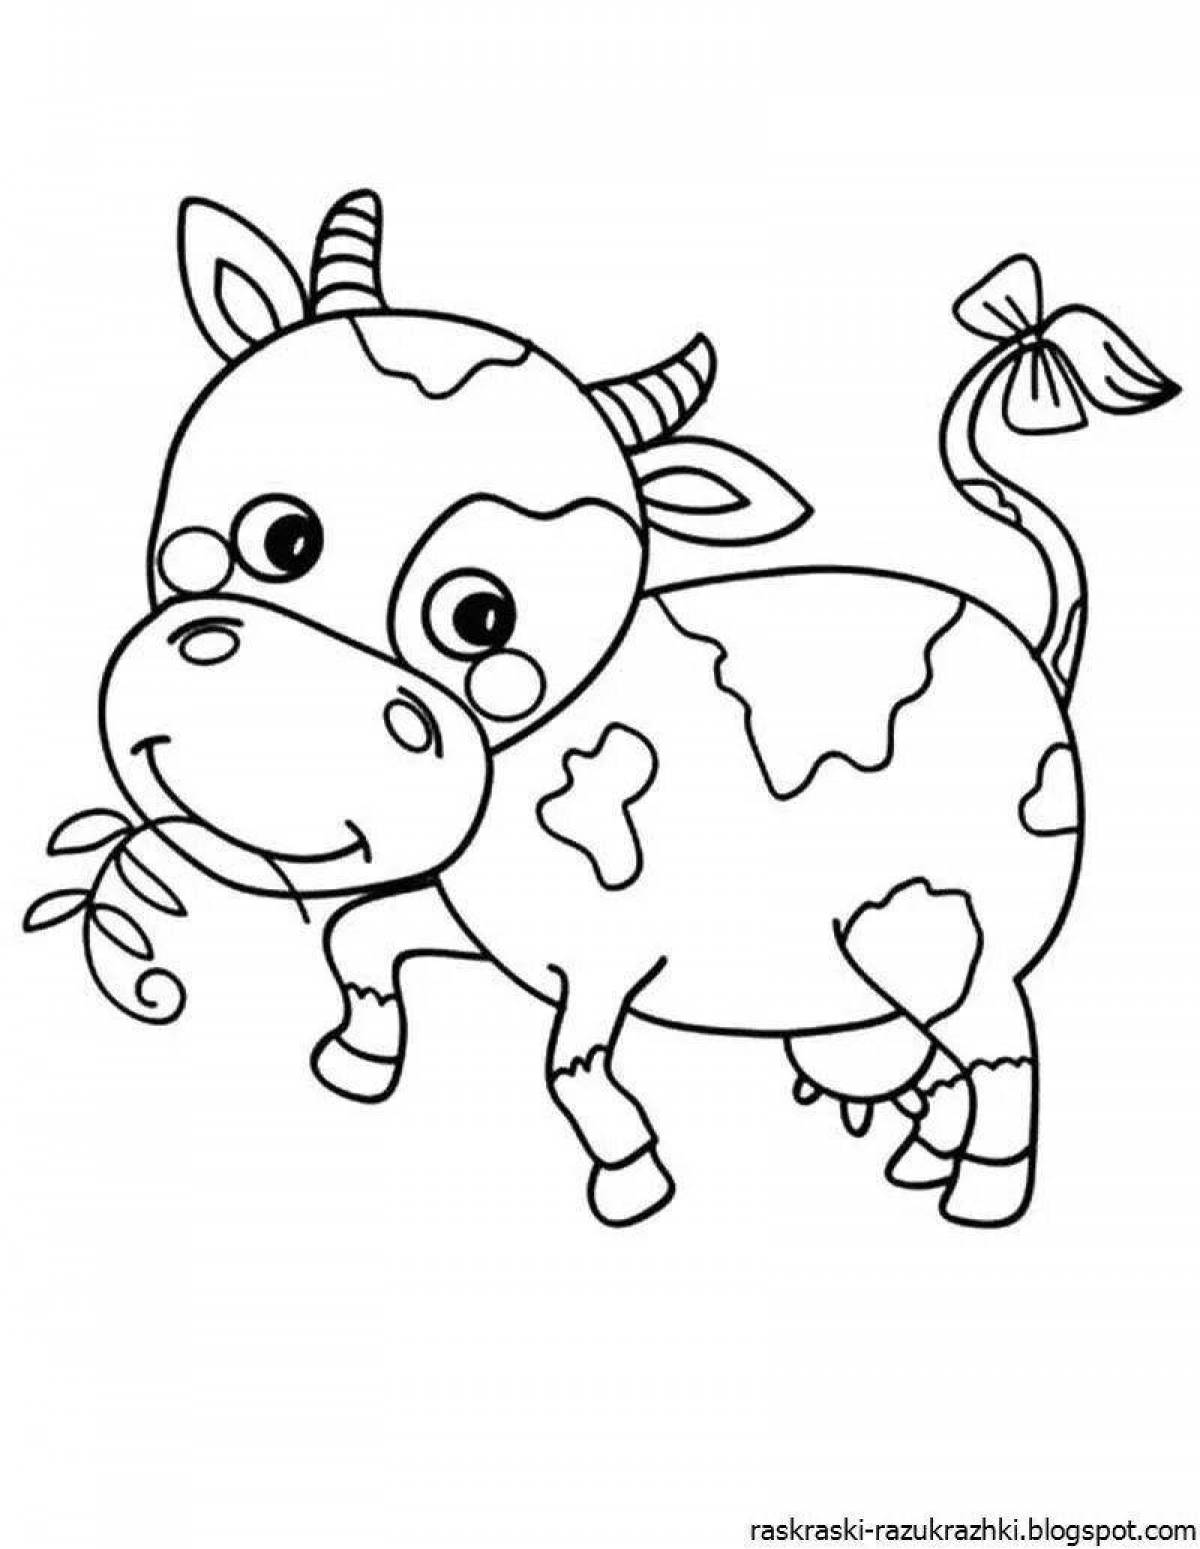 Яркий рисунок коровы